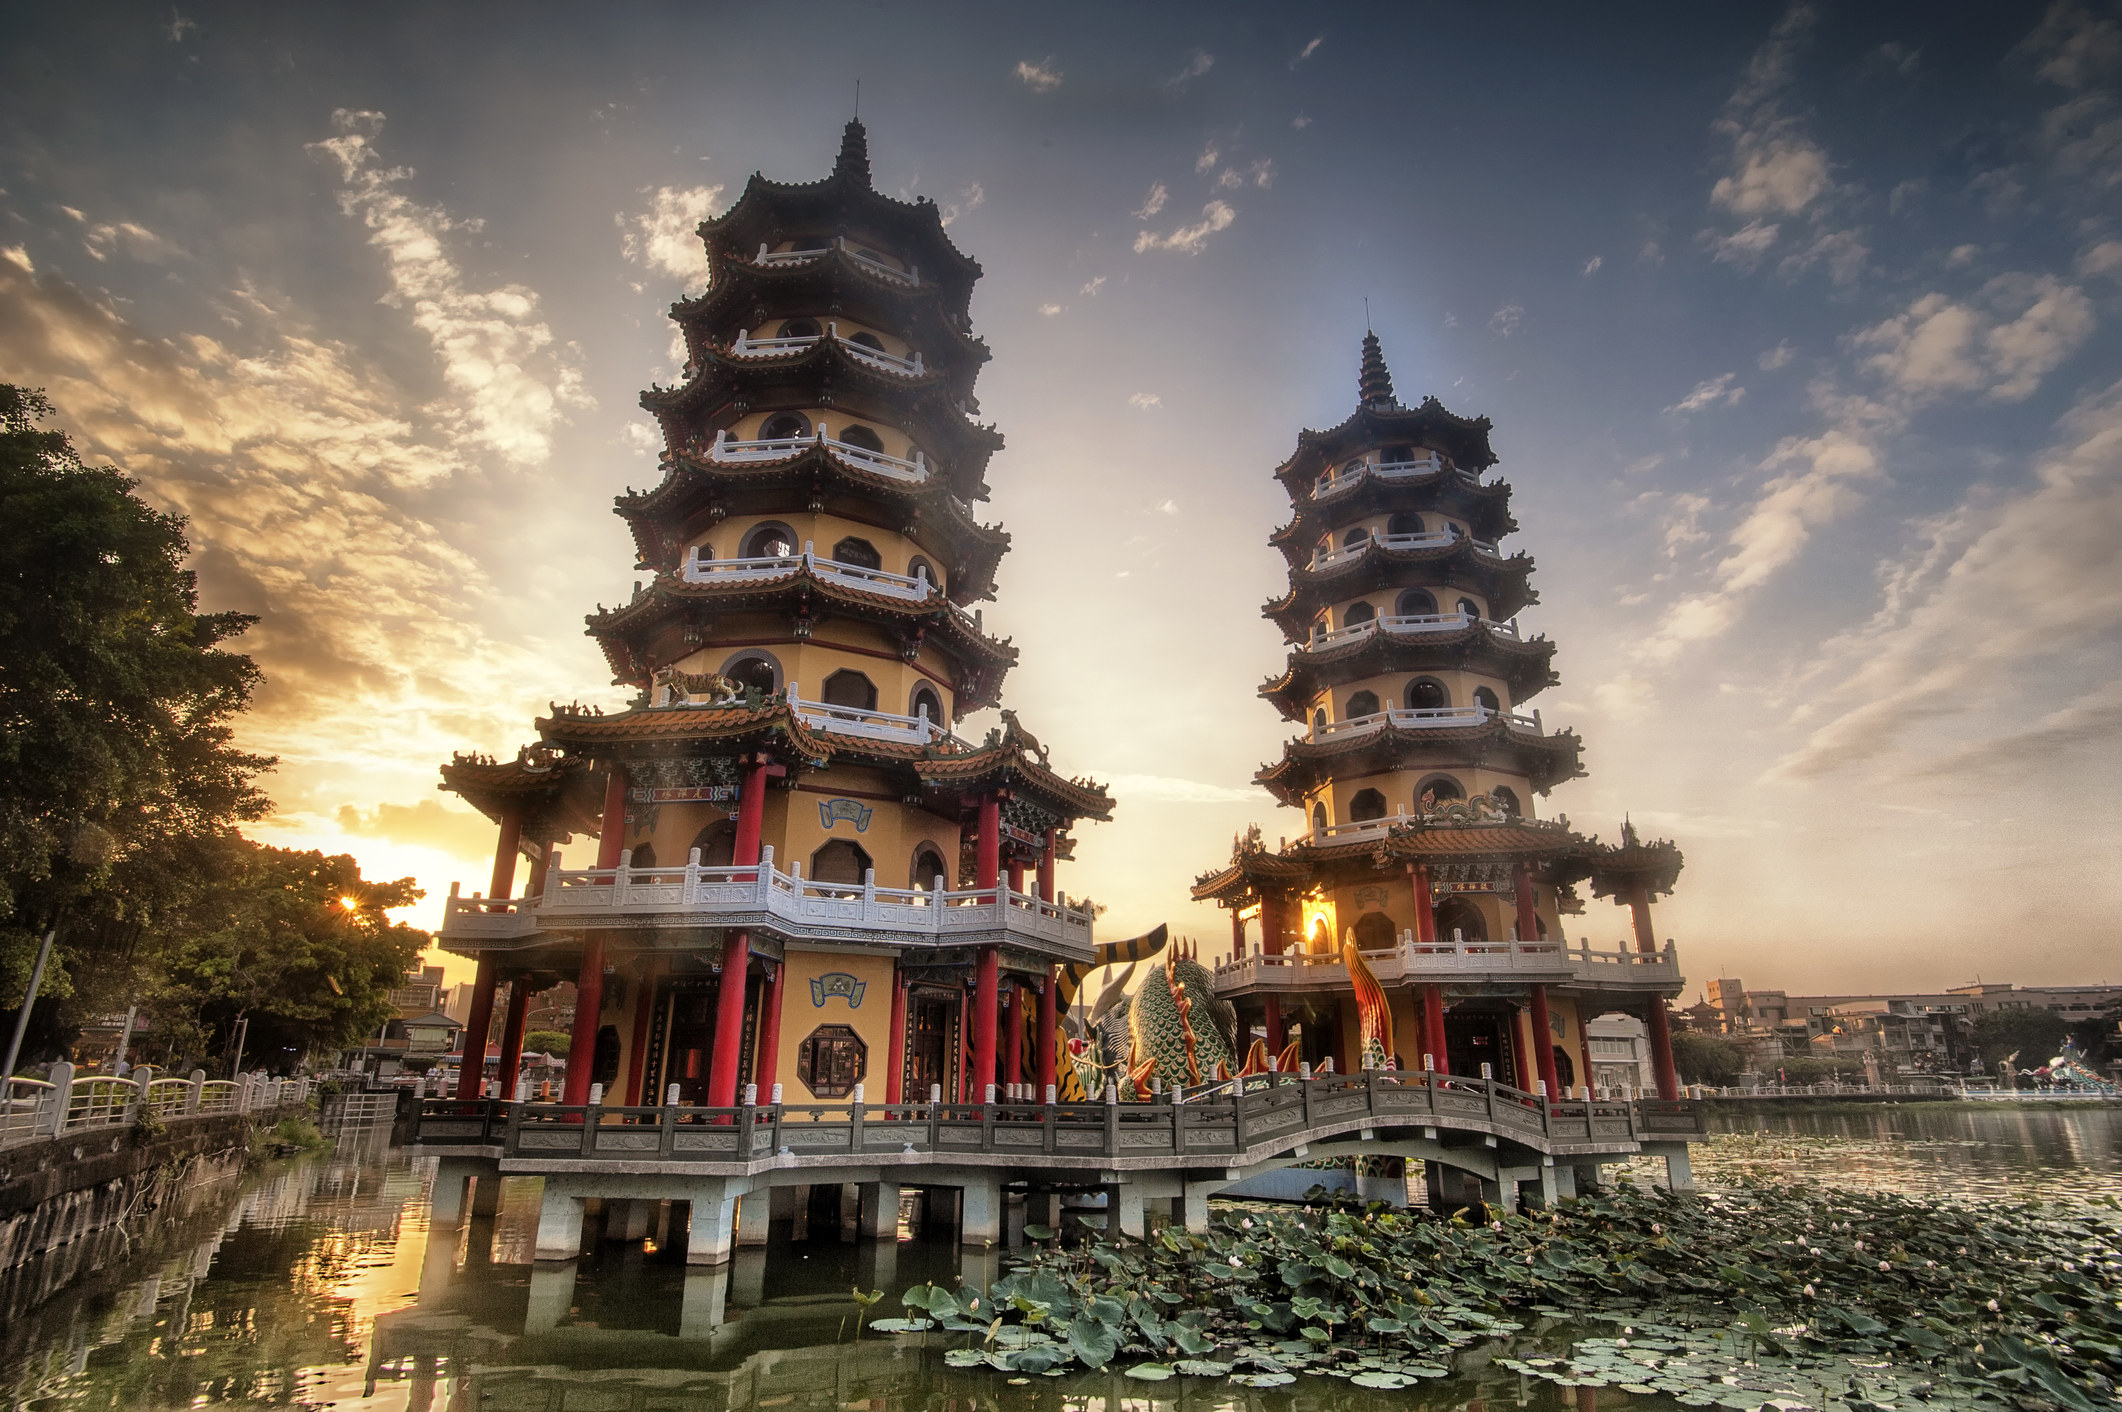 Two pagodas over a pond.